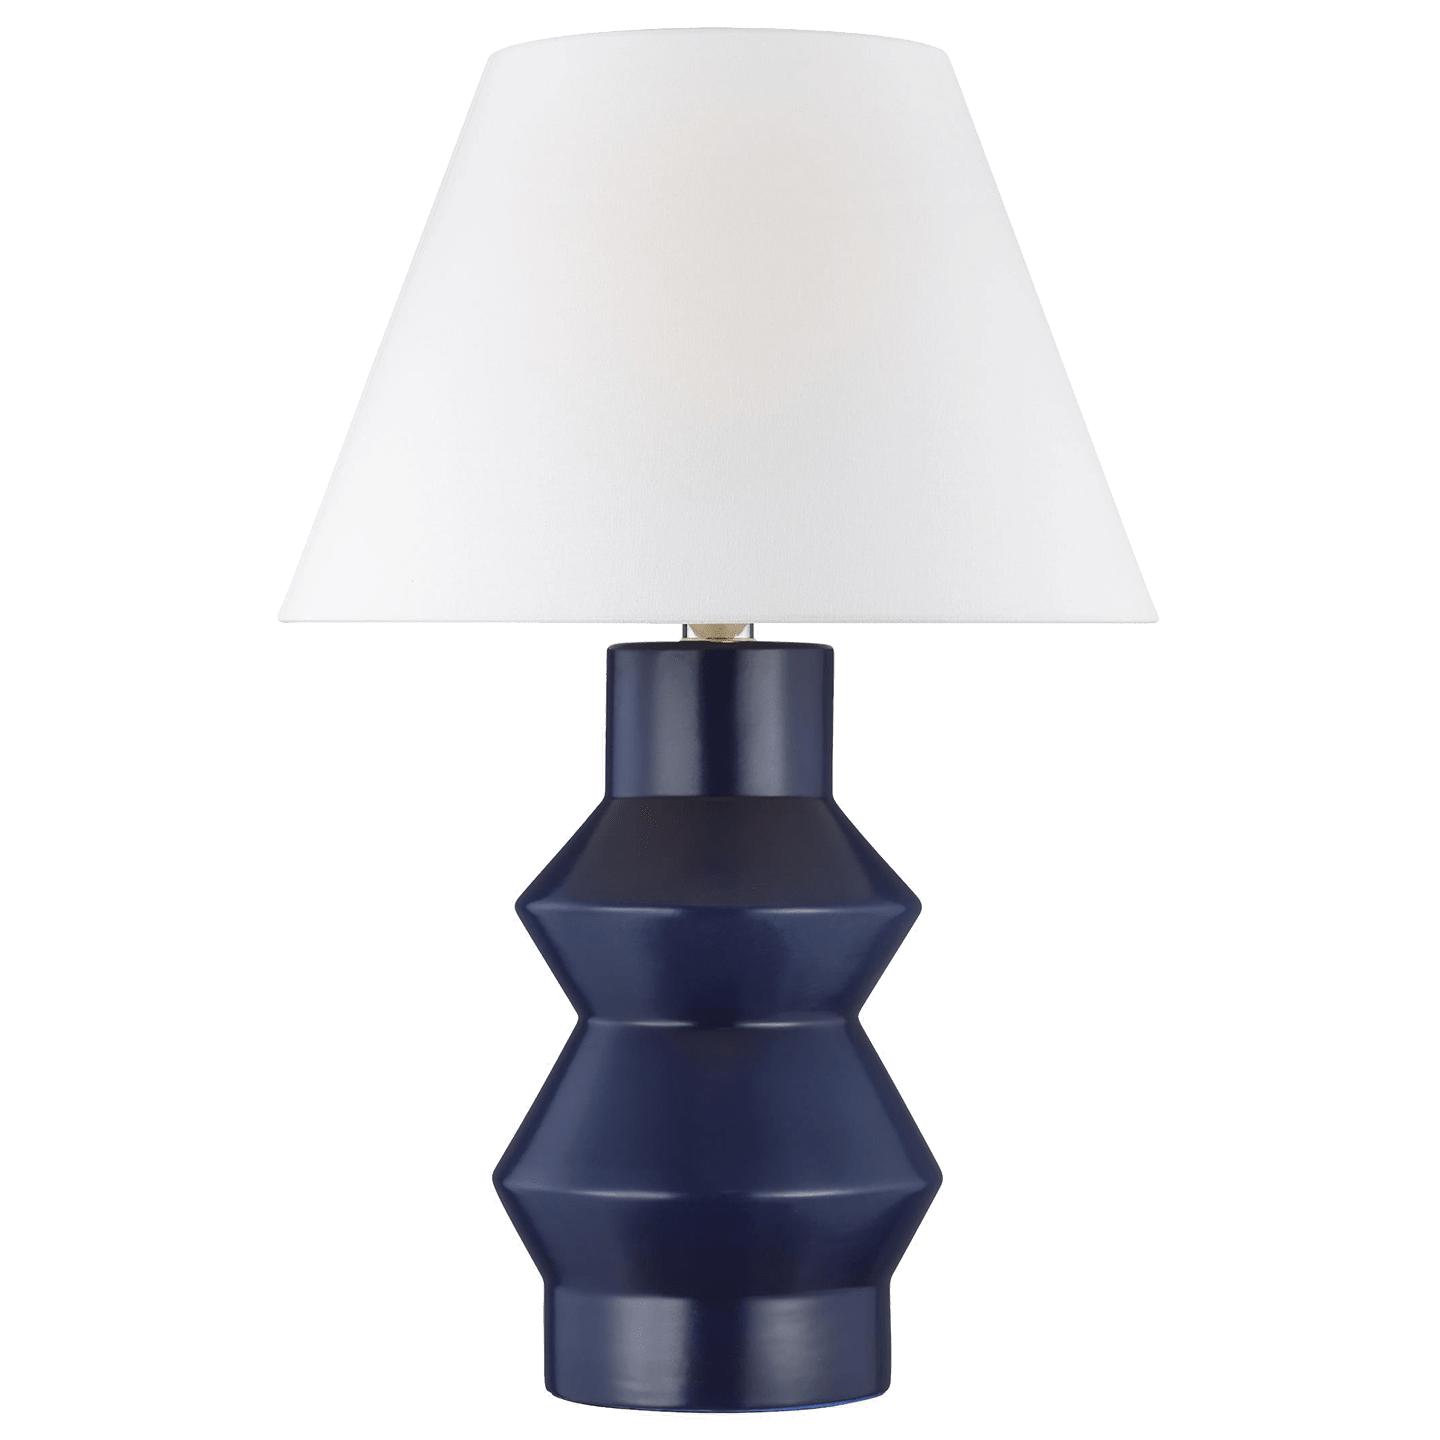 Купить Настольная лампа Abaco Large Table Lamp в интернет-магазине roooms.ru